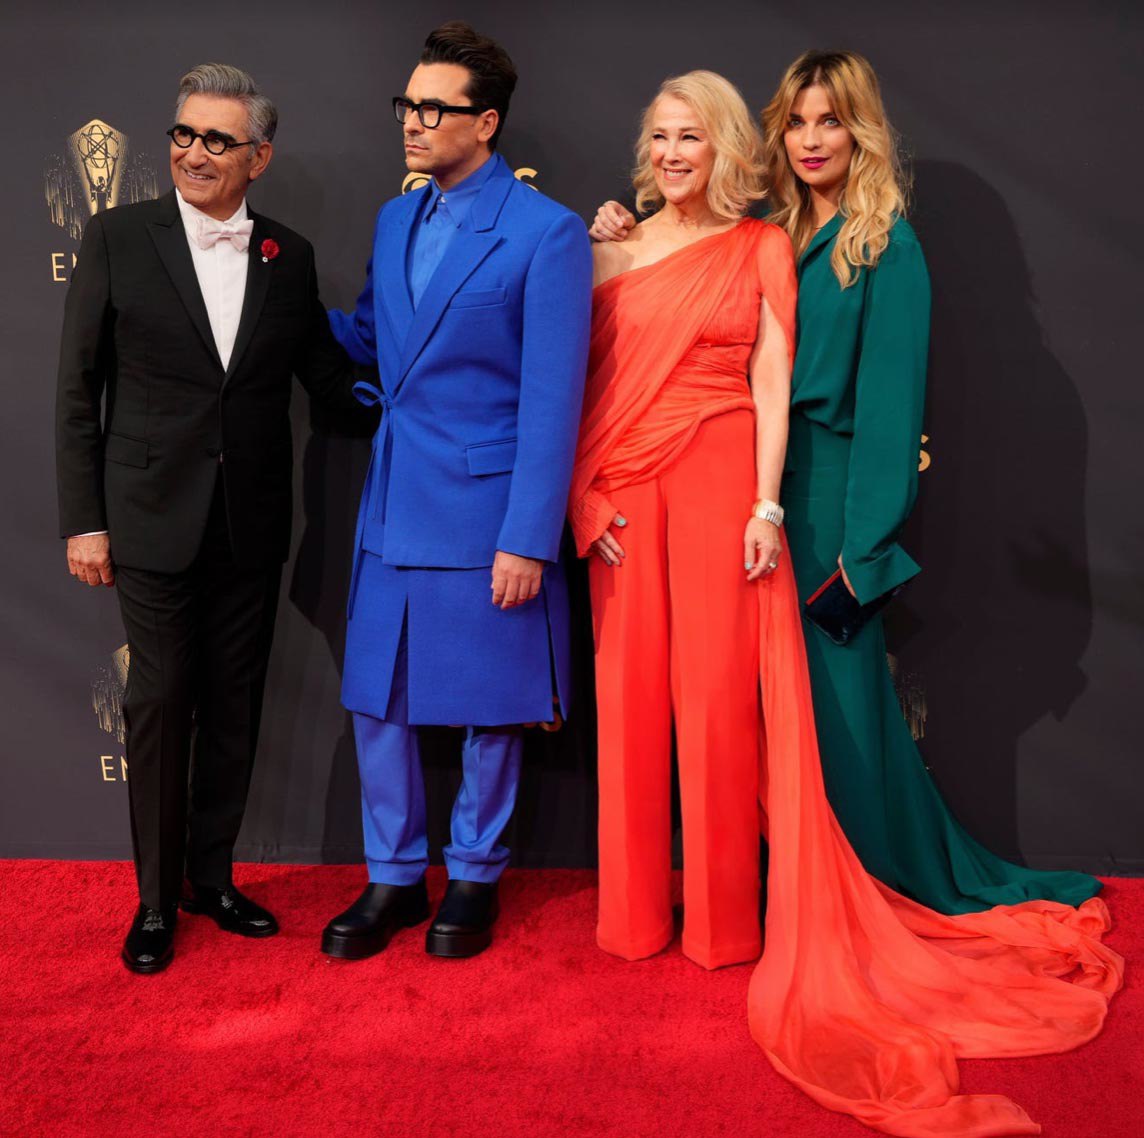 Ba mỹ nhân đua nhau diện trang phục của NTK Nguyễn Công Trí, bùng nổ sắc vóc tại Emmy 2021 - 1